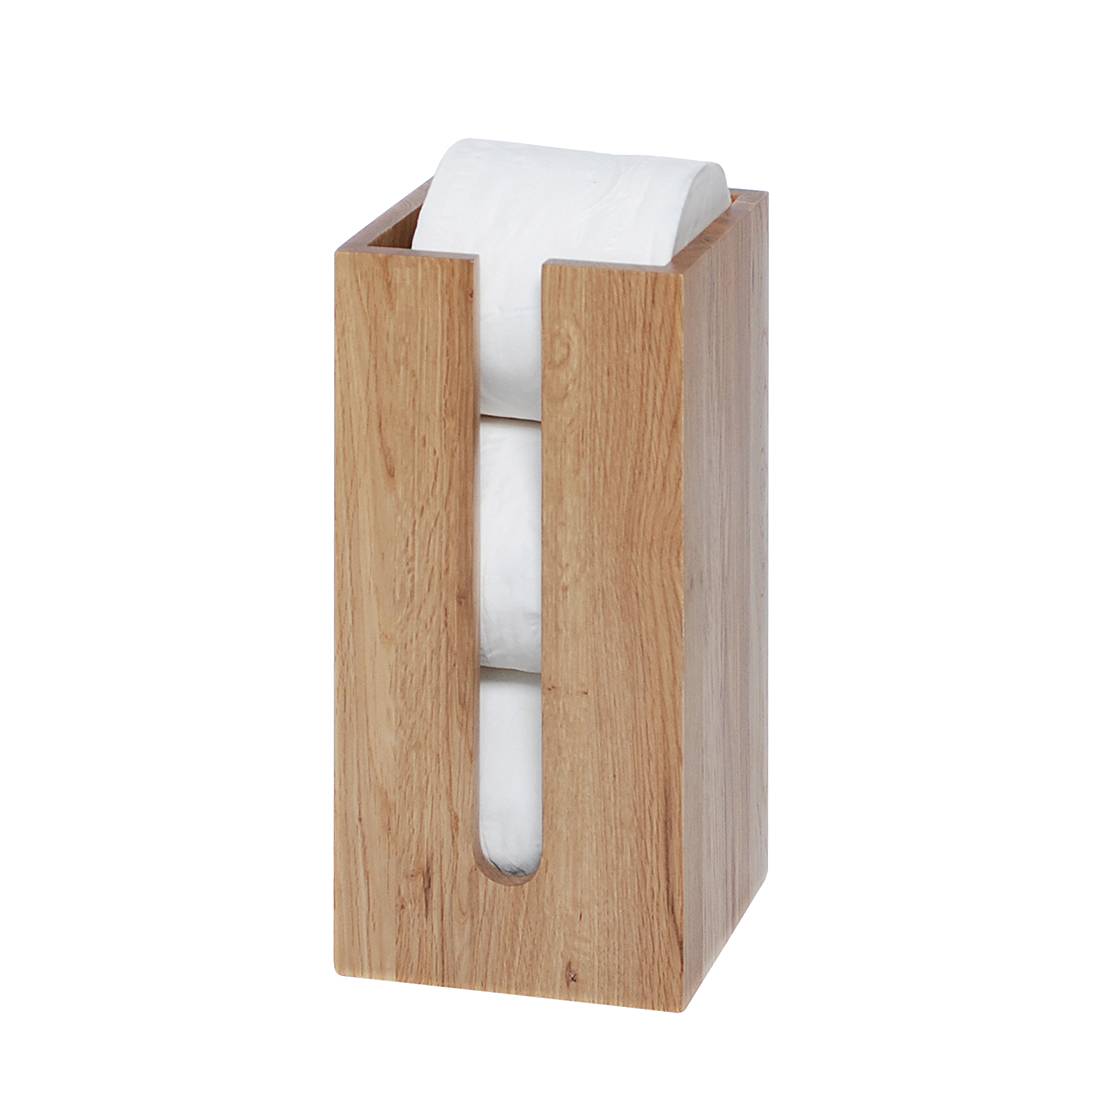 Toilettenpapier-Box Mezza - Eiche Natur, Wireworks